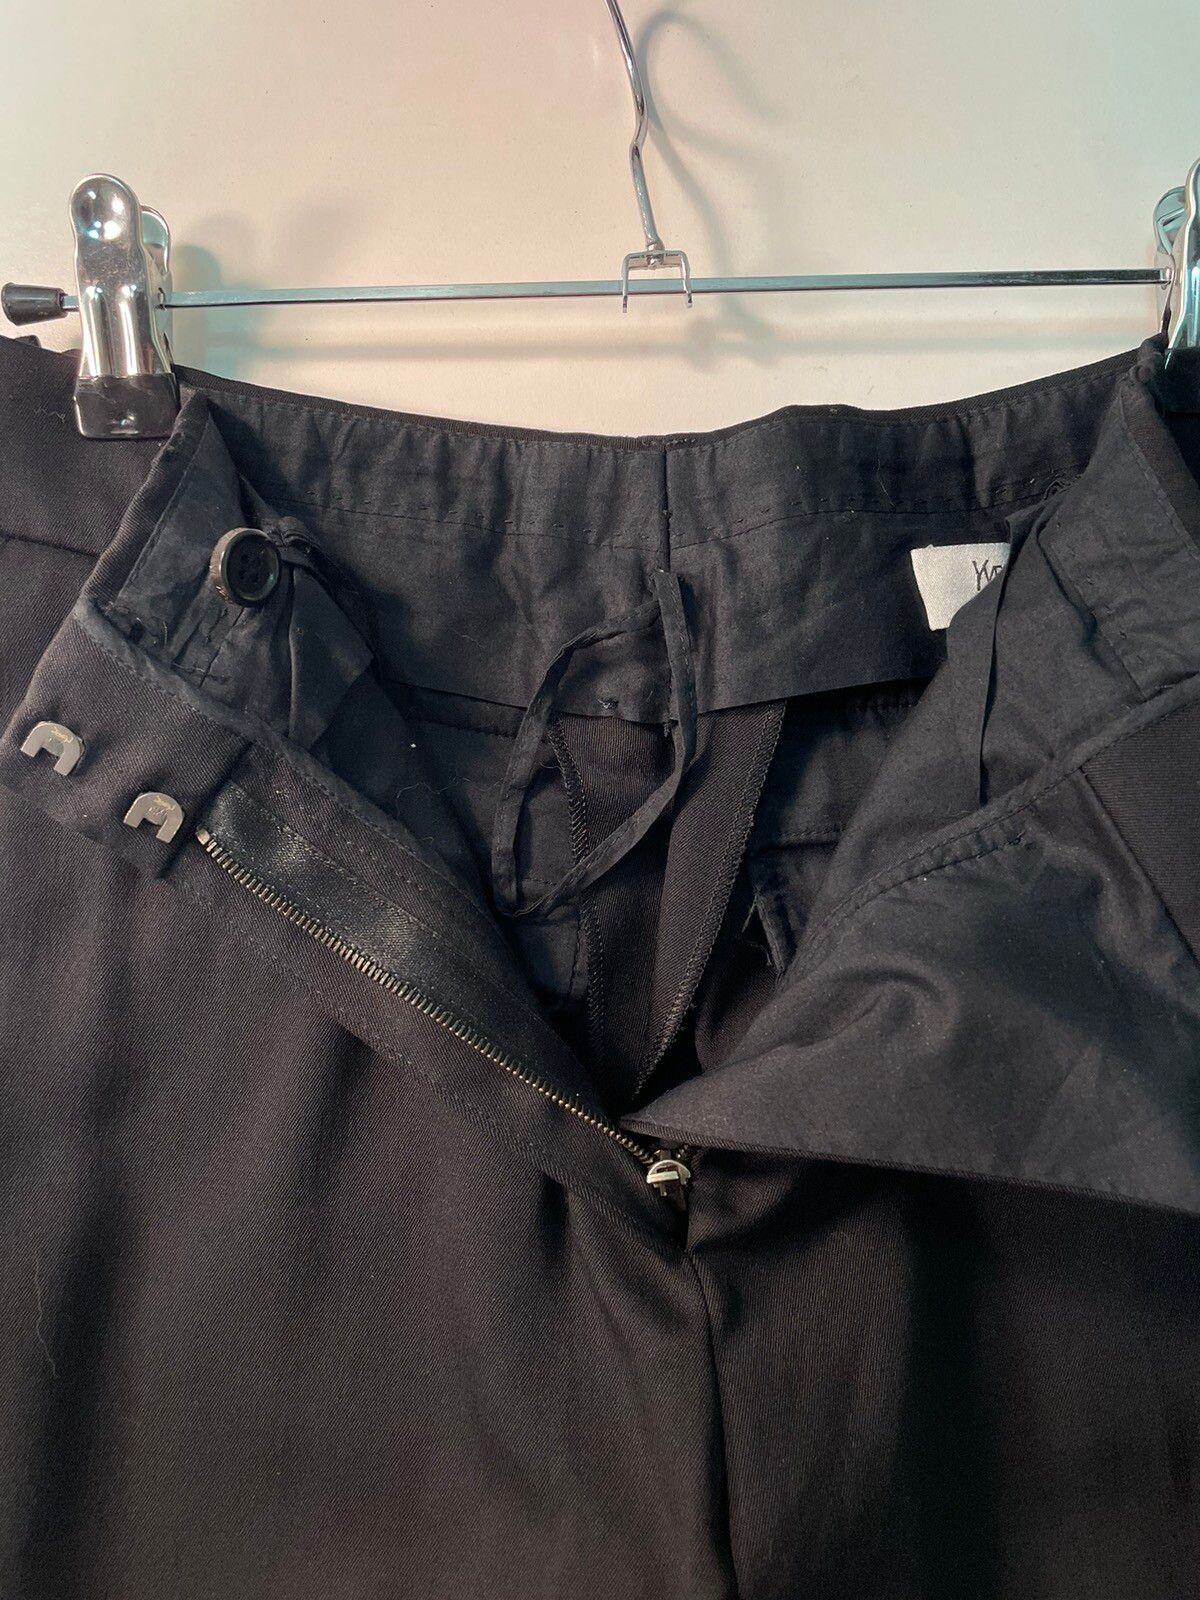 Yves Saint Laurent Vintage Yves Saint Laurent Black Wool Trousers Size 28”x30” Size 28" / US 6 / IT 42 - 11 Thumbnail